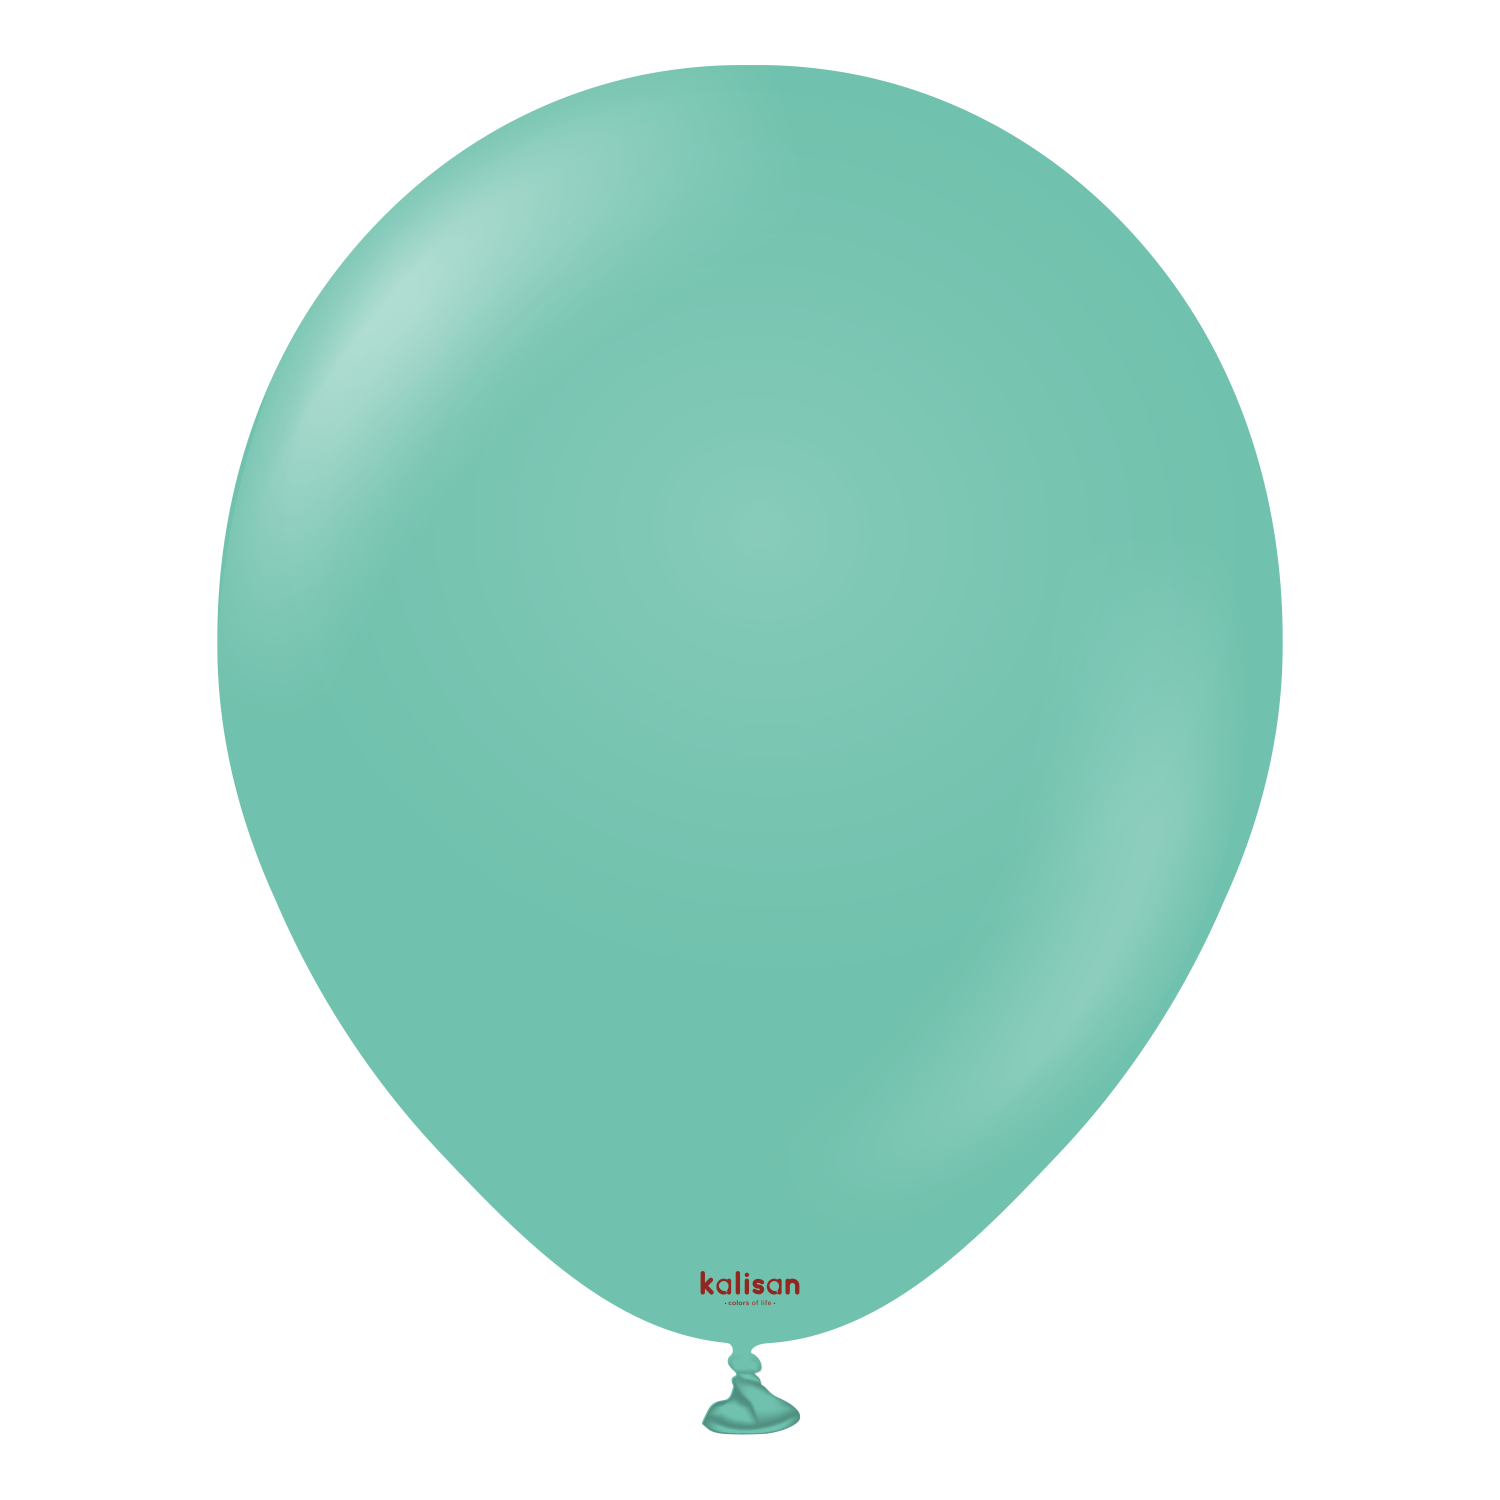 Premium ballong i sjøgrønn farge fra Ballongriket